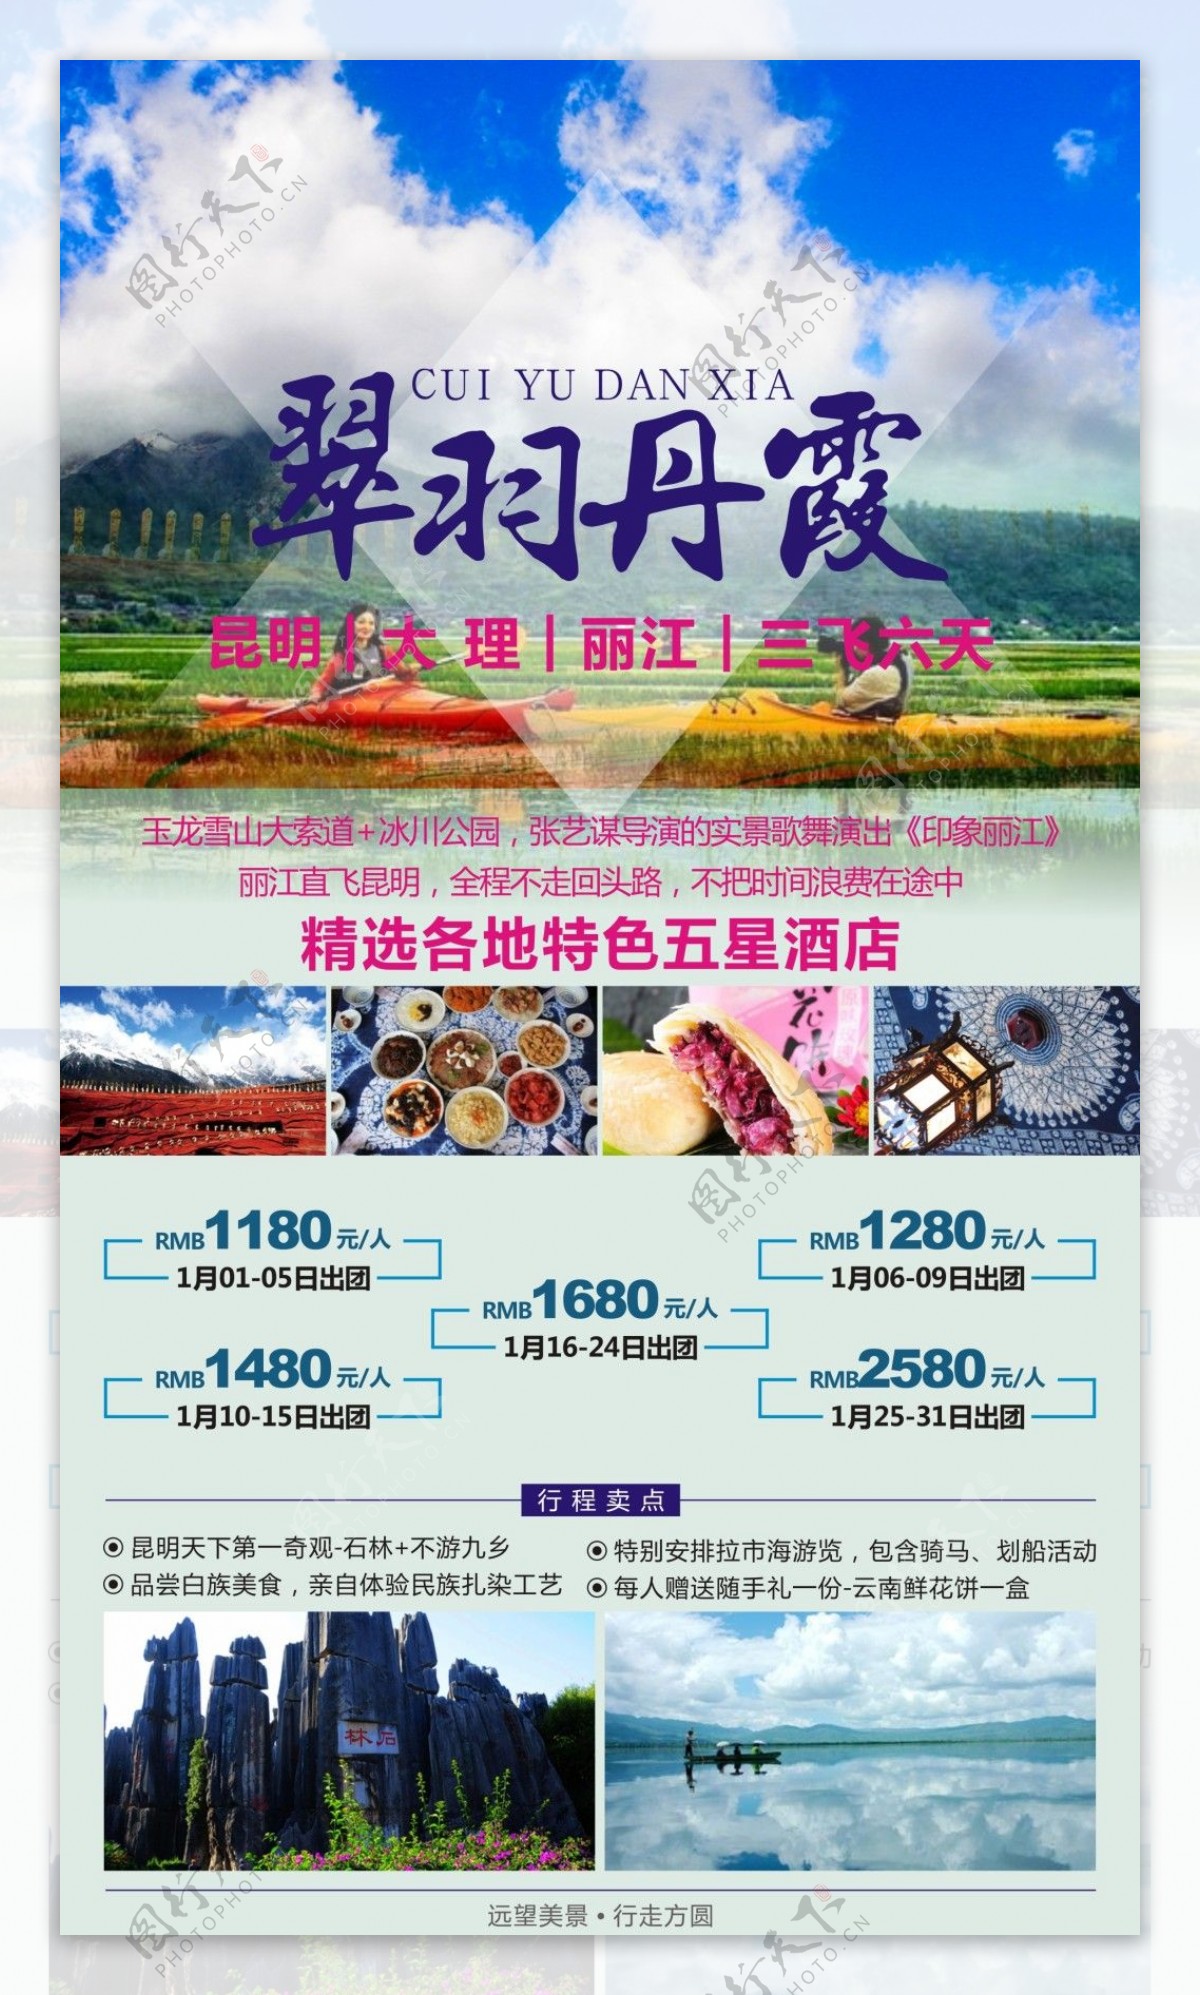 翠羽丹霞云南旅游广告宣传图